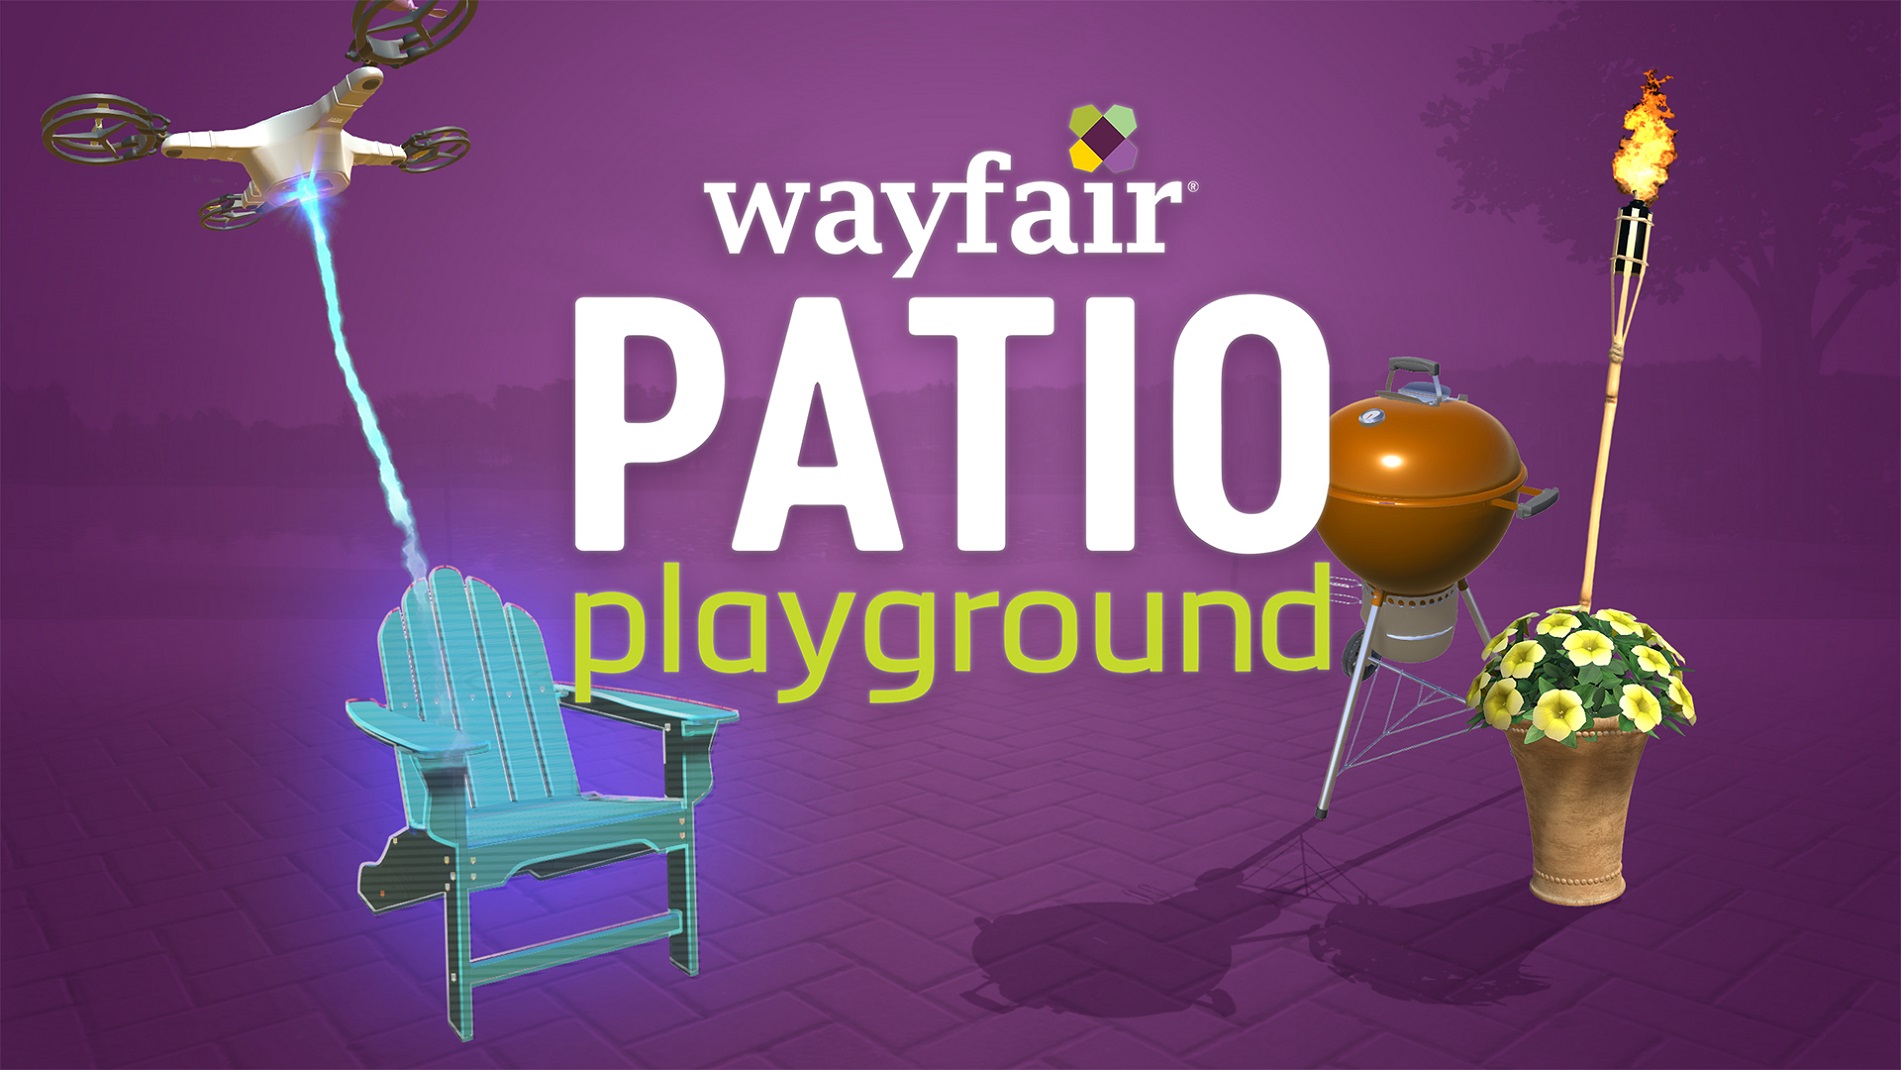 wayfair patio playground